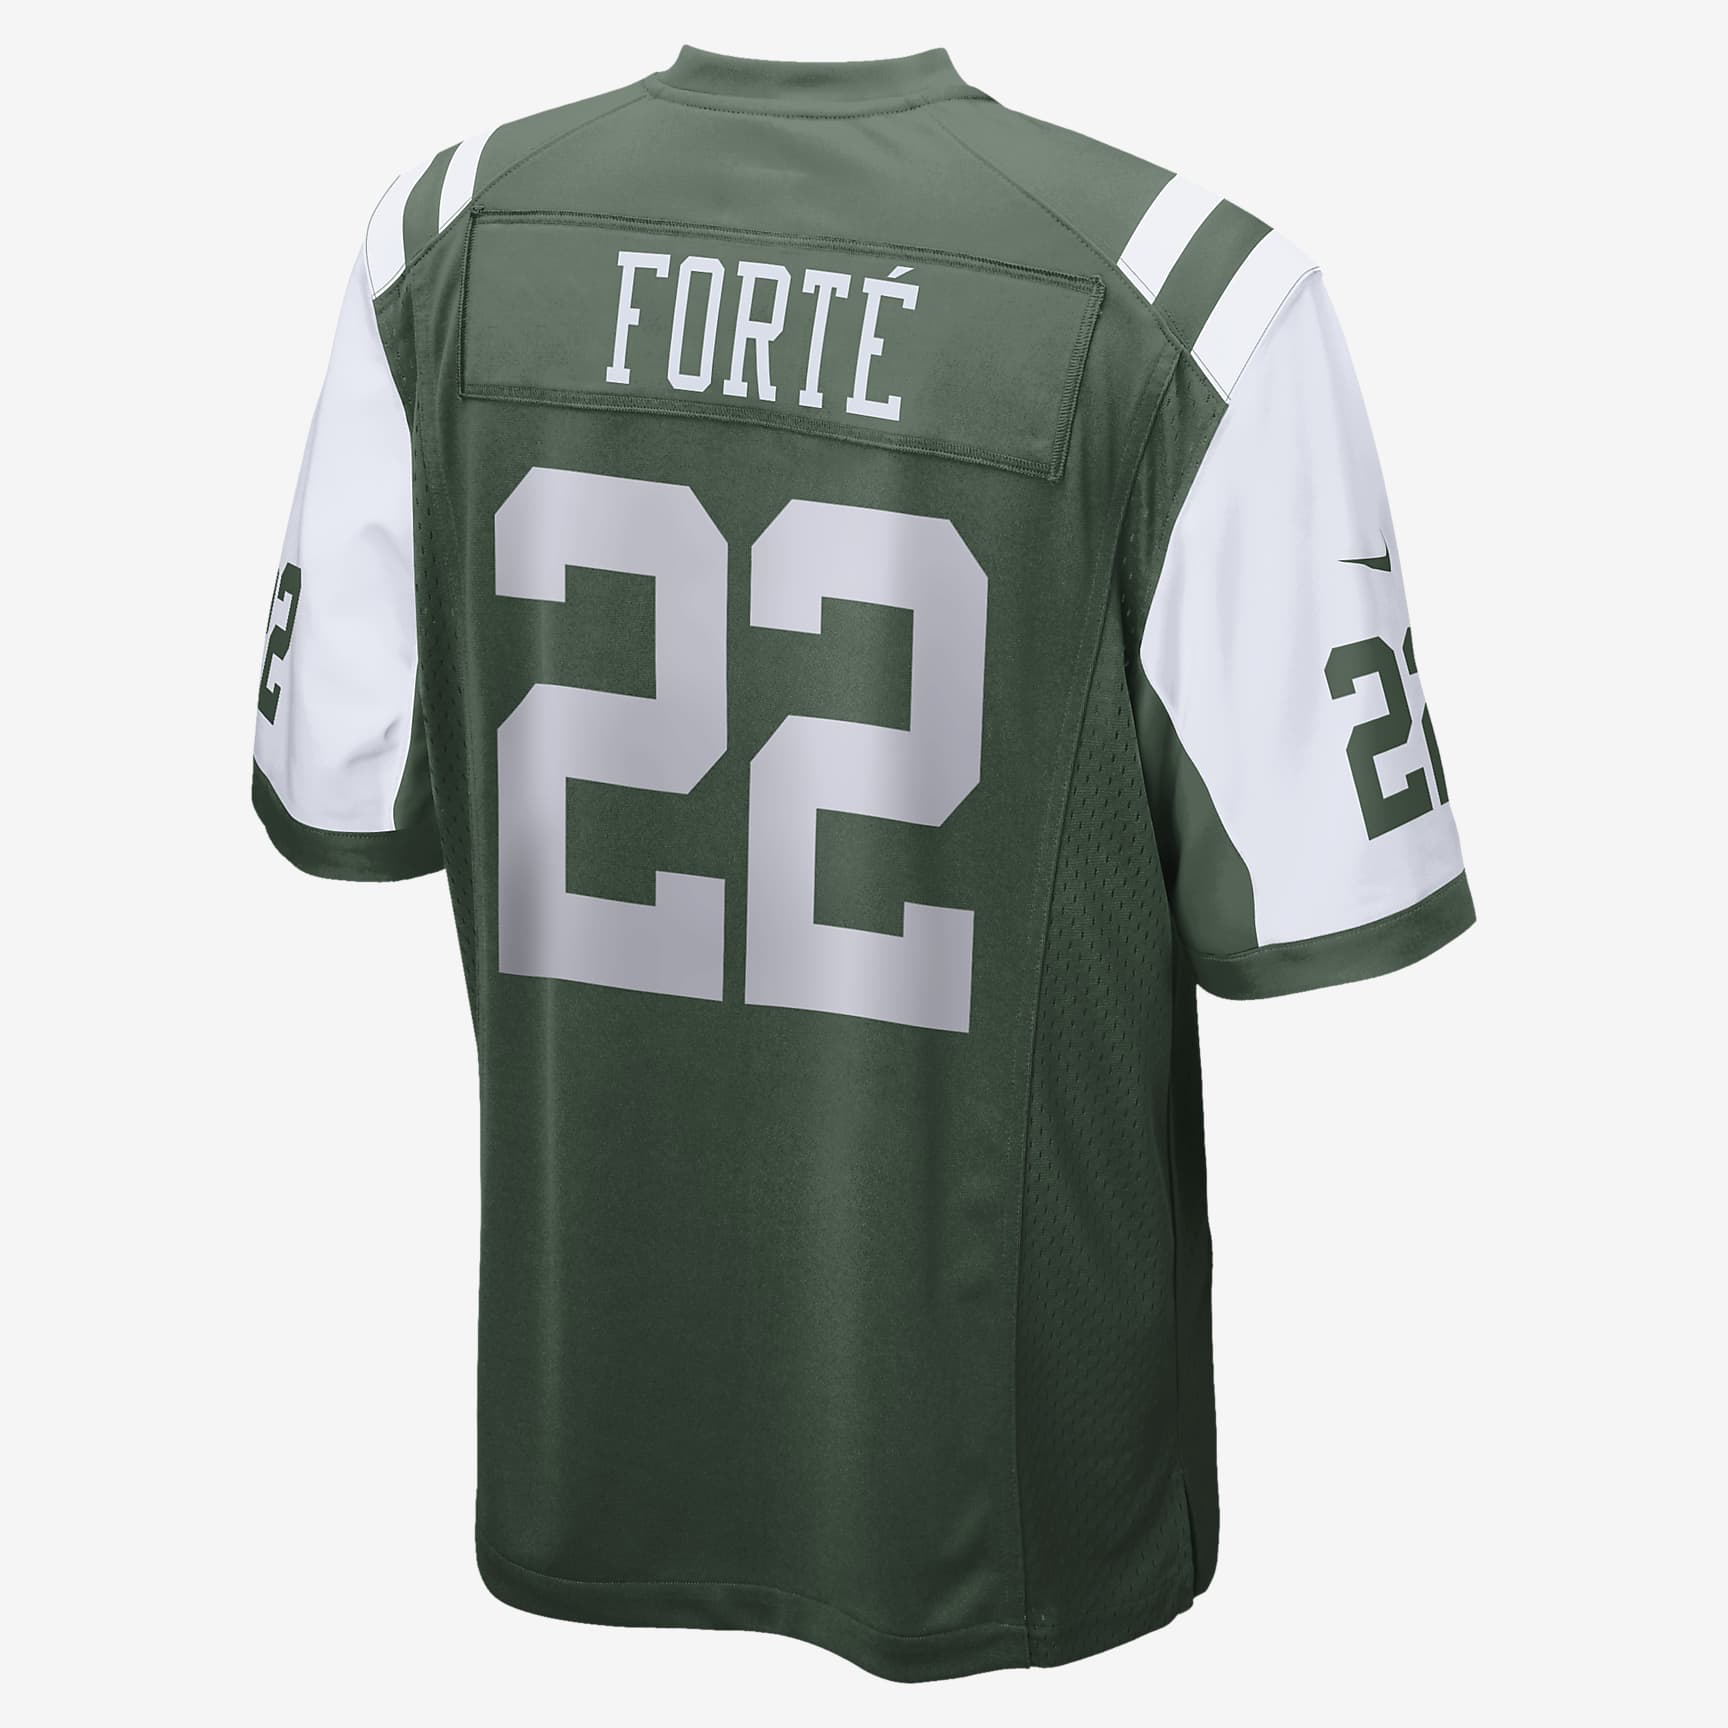 NFL New York Jets (Matt Forte) Men's American Football Game Jersey. Nike UK